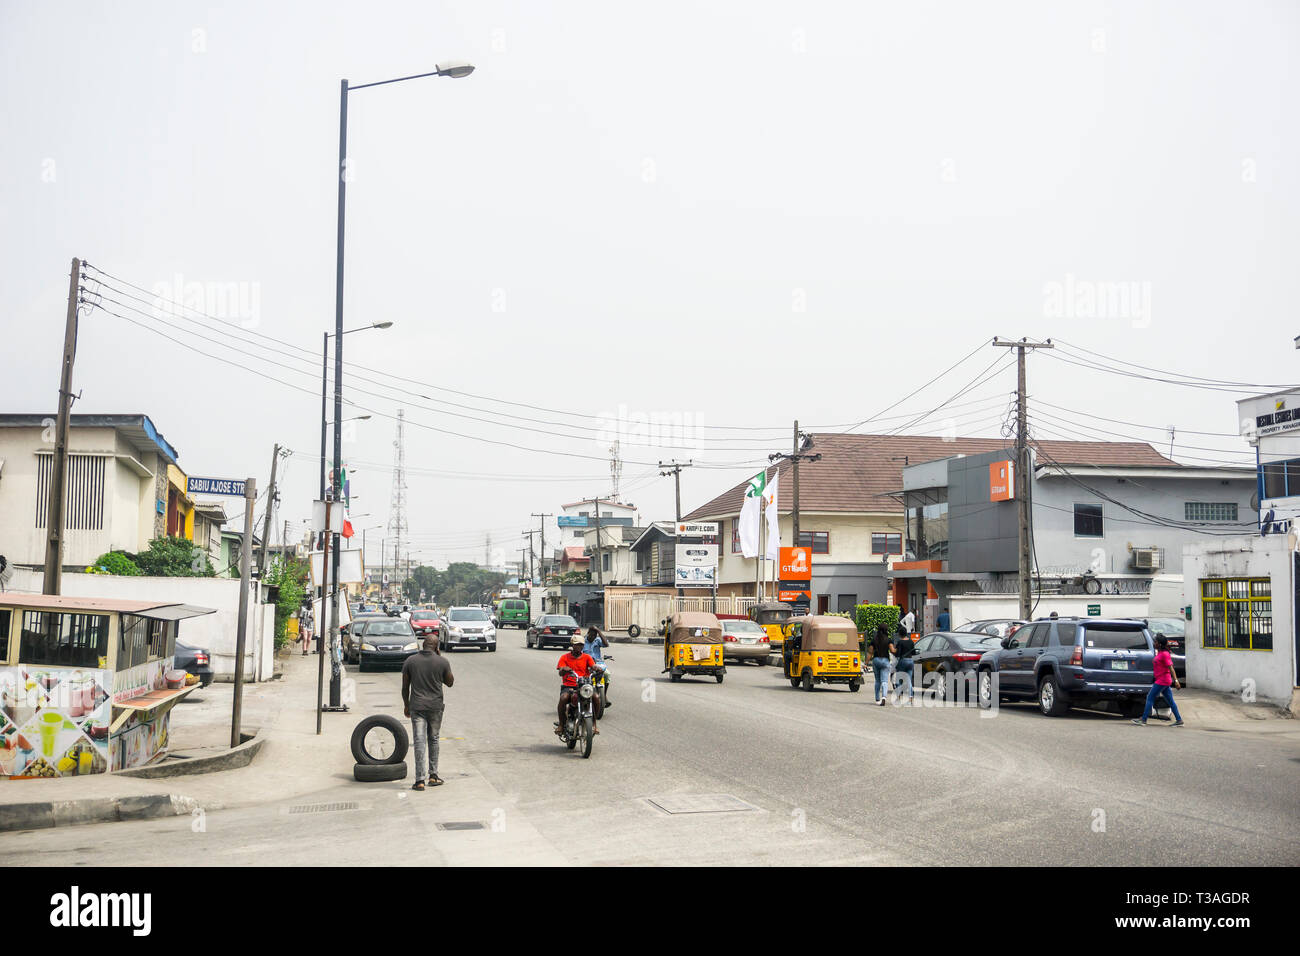 Lagos Nigeria 15 février 2019 - Une longue après-midi sur la rue Thomas Bode surulere - avec les véhicules, les bâtiments et les gens Banque D'Images